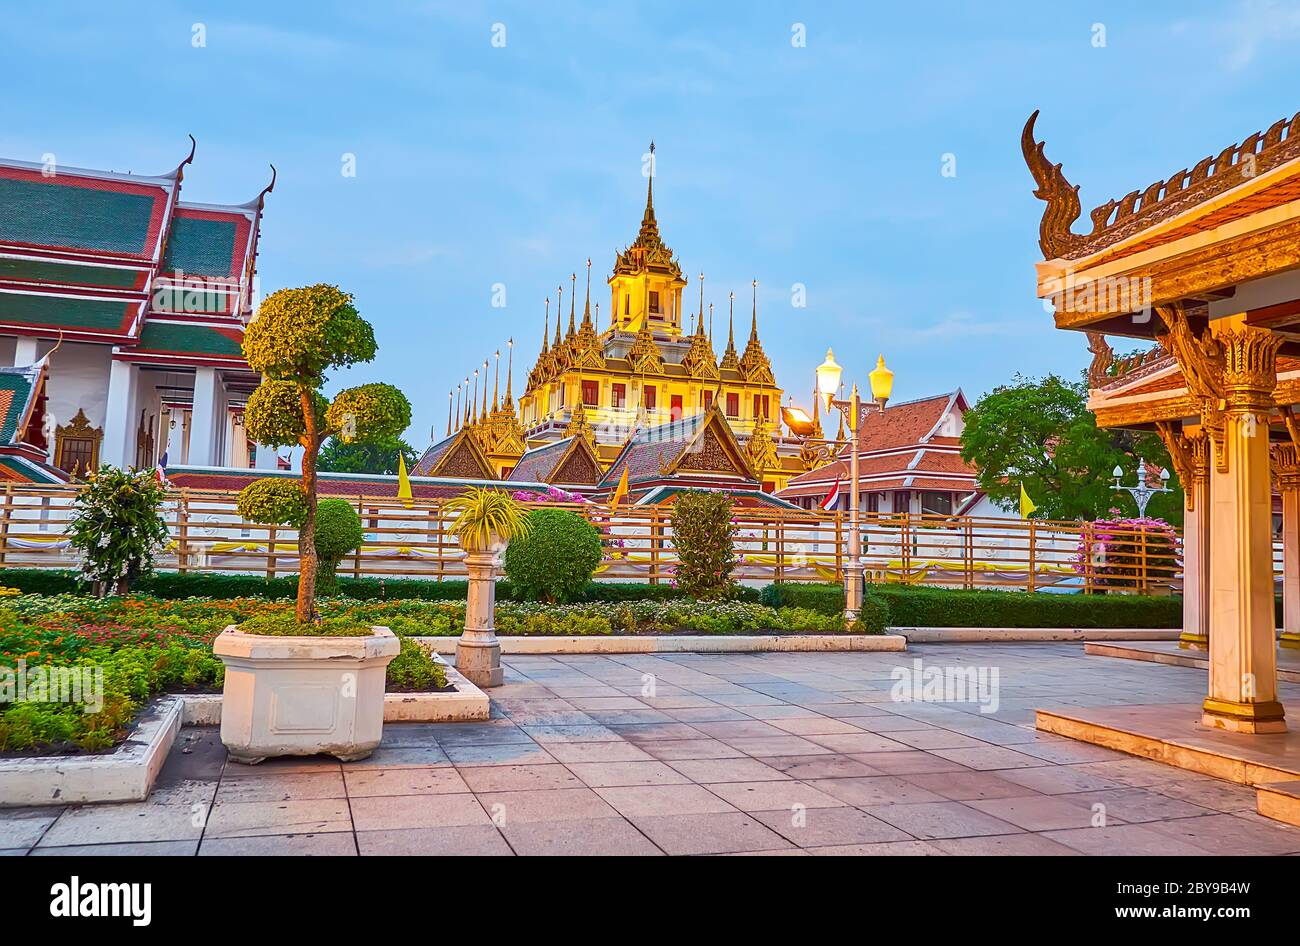 Les lumières tamisées décorent le bâtiment pittoresque du temple Loha Prasat du complexe Wat Ratchanatdaram, vu du parc topiaire Mahajetsadabadin, Bangkok, Banque D'Images